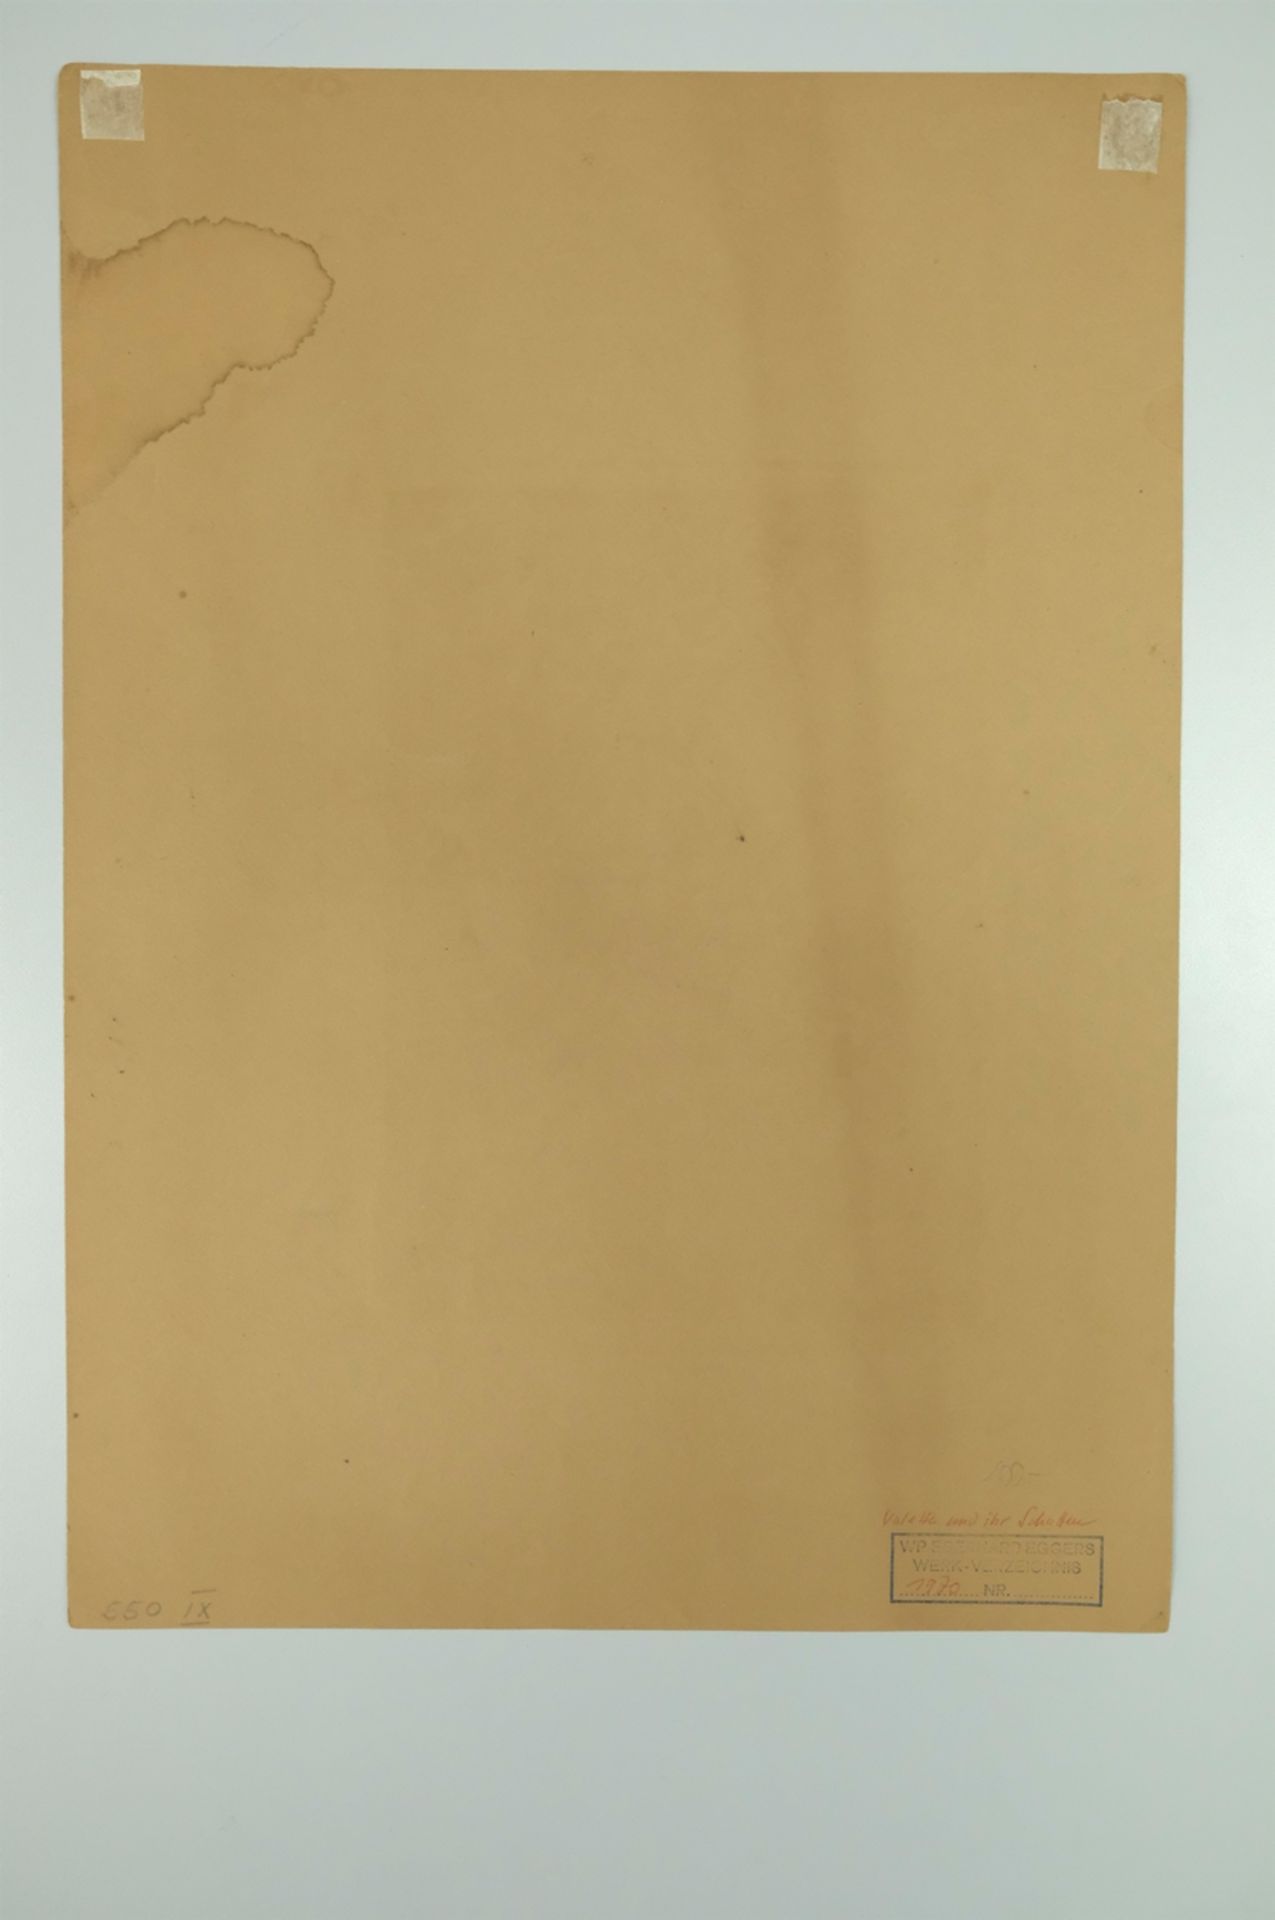 EGGERS W. P. Eberhard "Valette und ihr Schatten", nackter Frauenkörper, mit rotem und weißem Buntst - Image 3 of 5